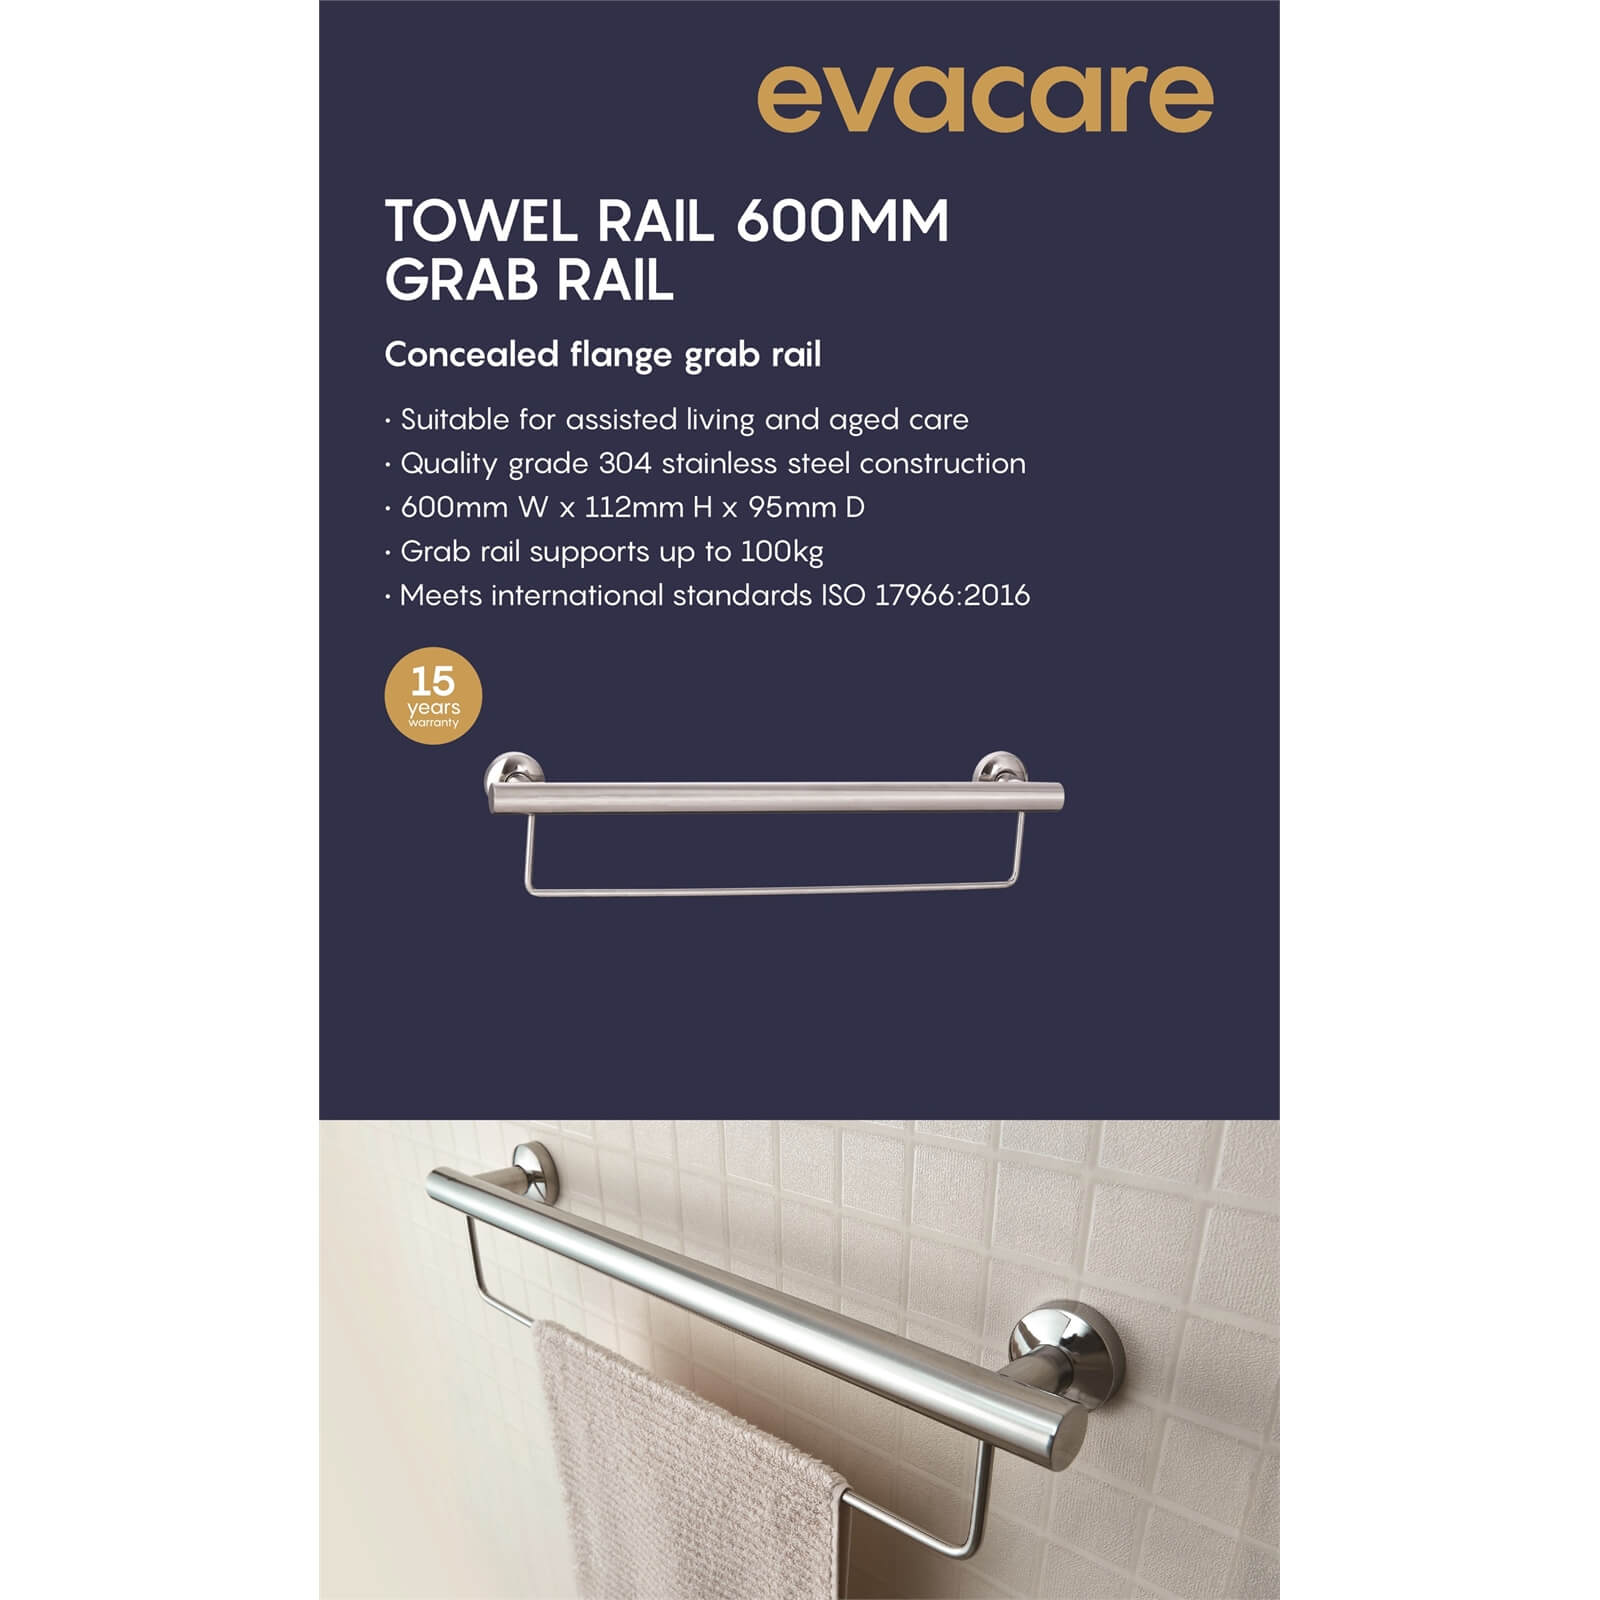 Evacare 600mm Towel and Grab Rail